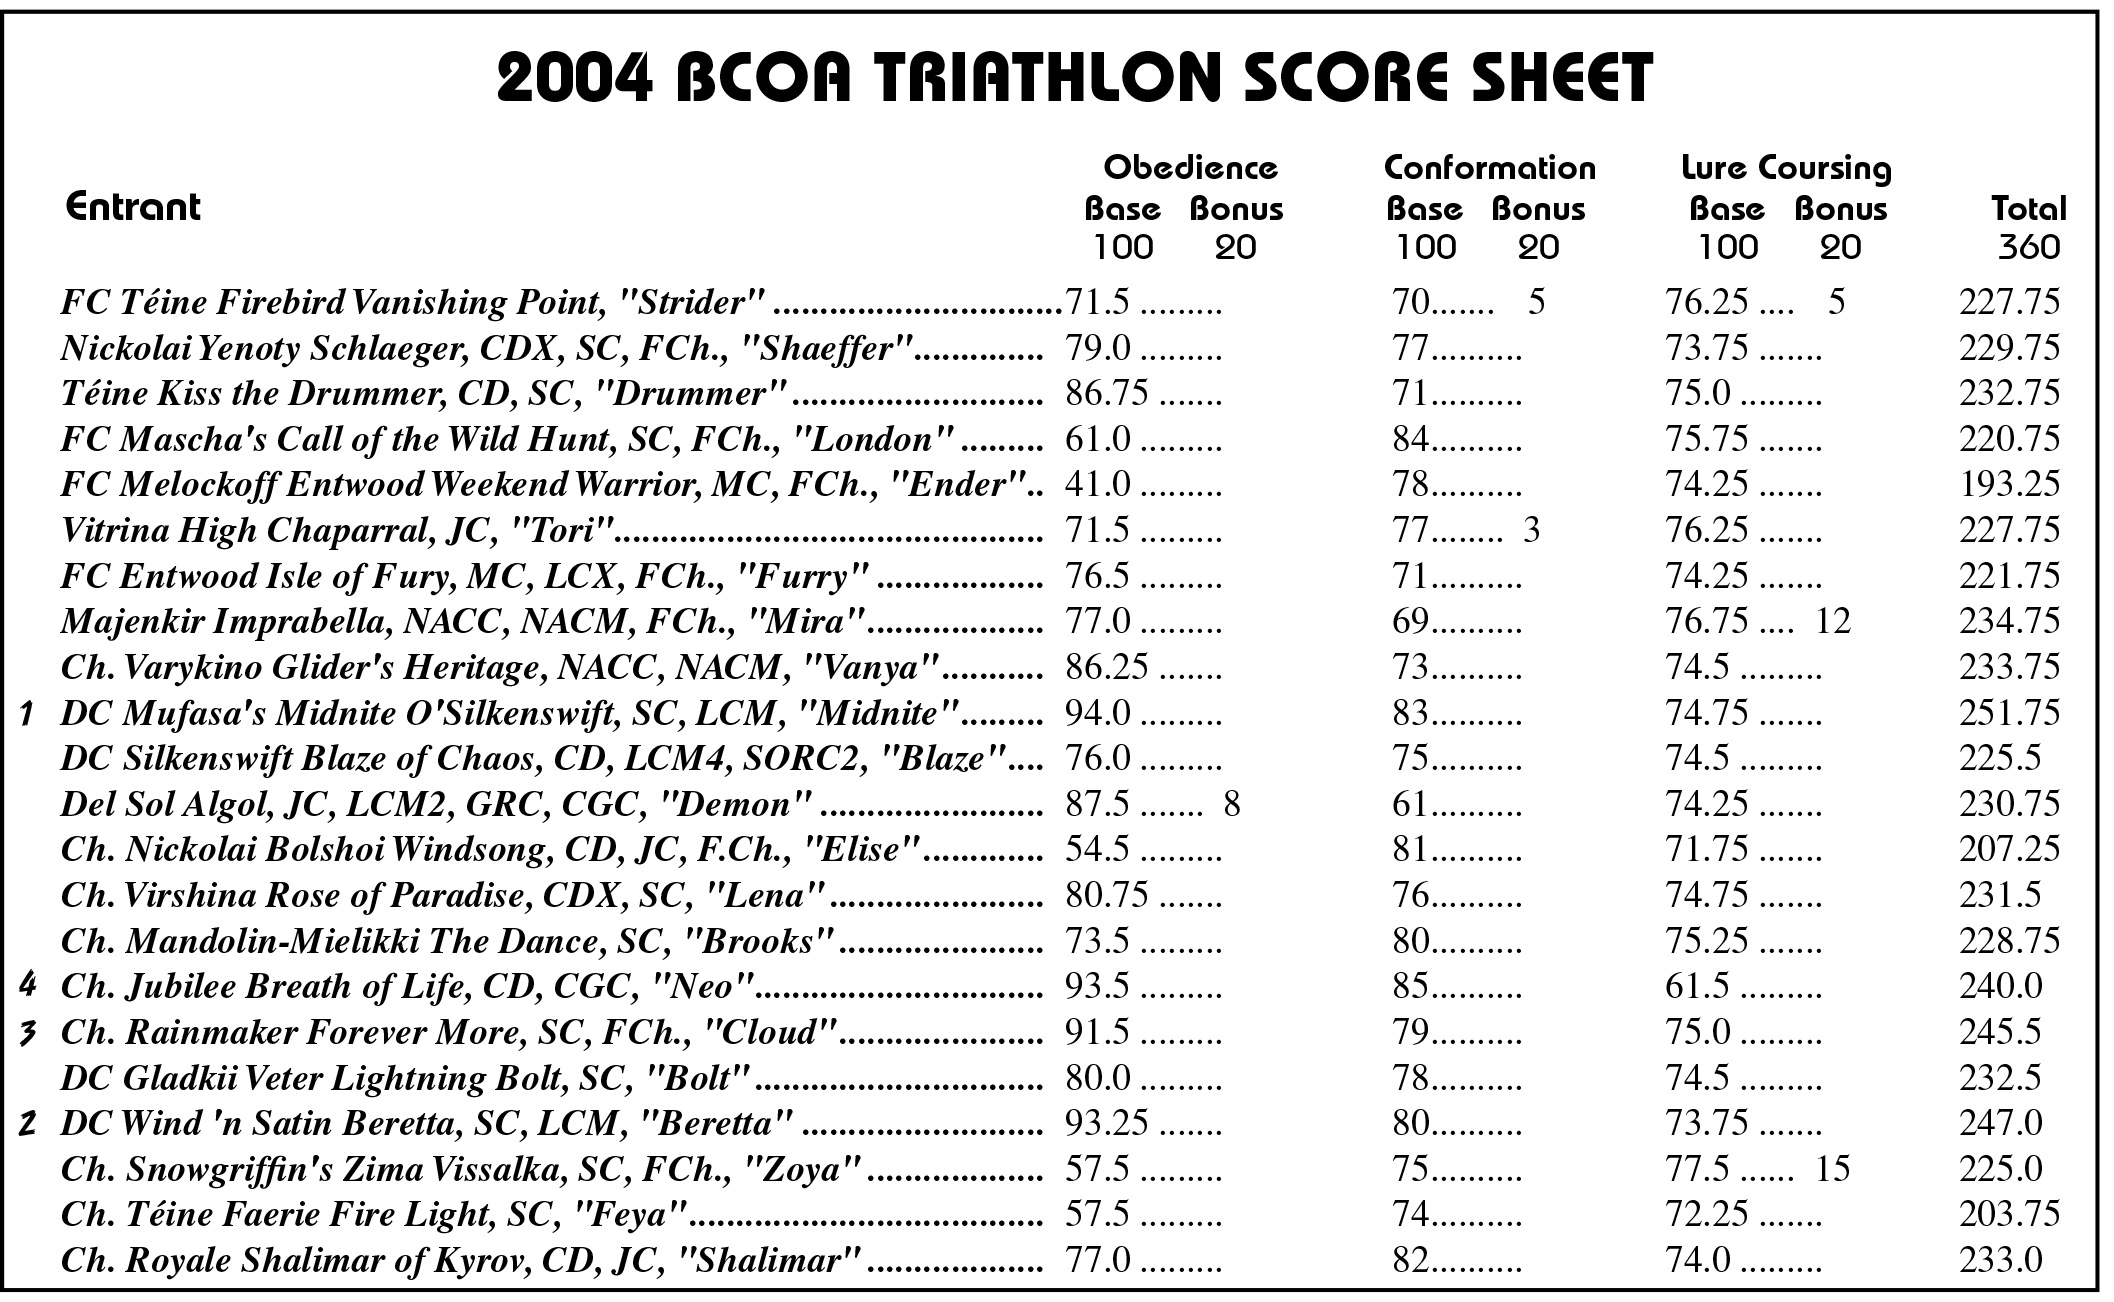 2004 Triathlon Scores